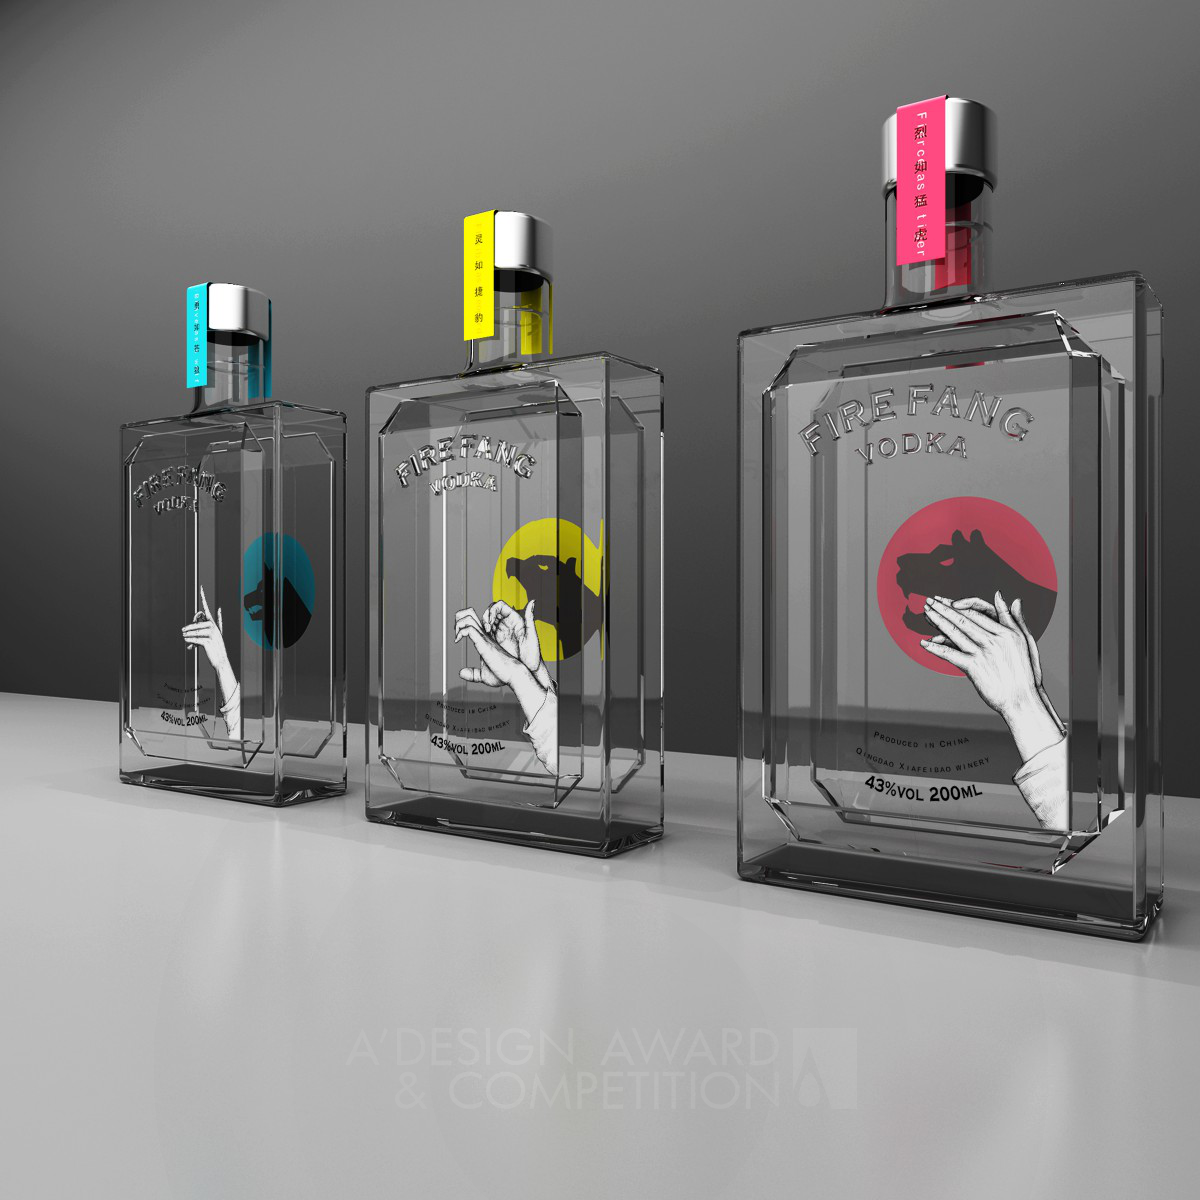 Fire Fang Vodka Packaging design by Zhou Jingkuan